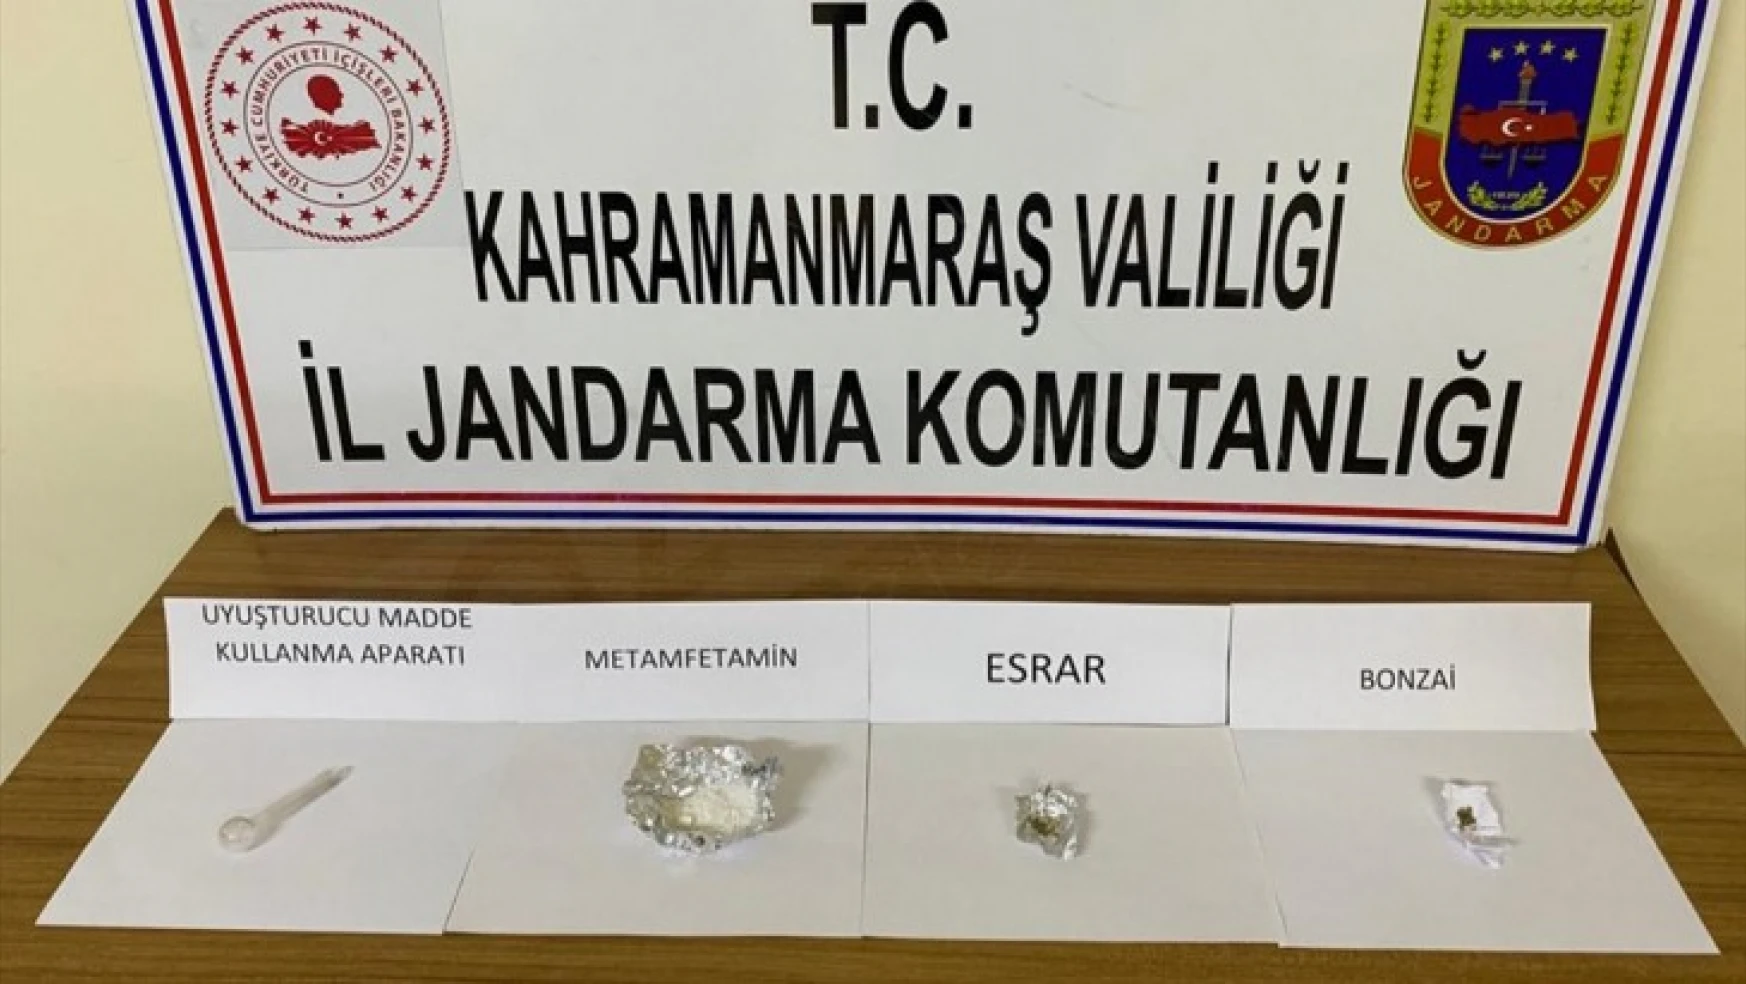 Kahramanmaraş'ta uyuşturucu operasyonu: 3 şüpheli yakalandı